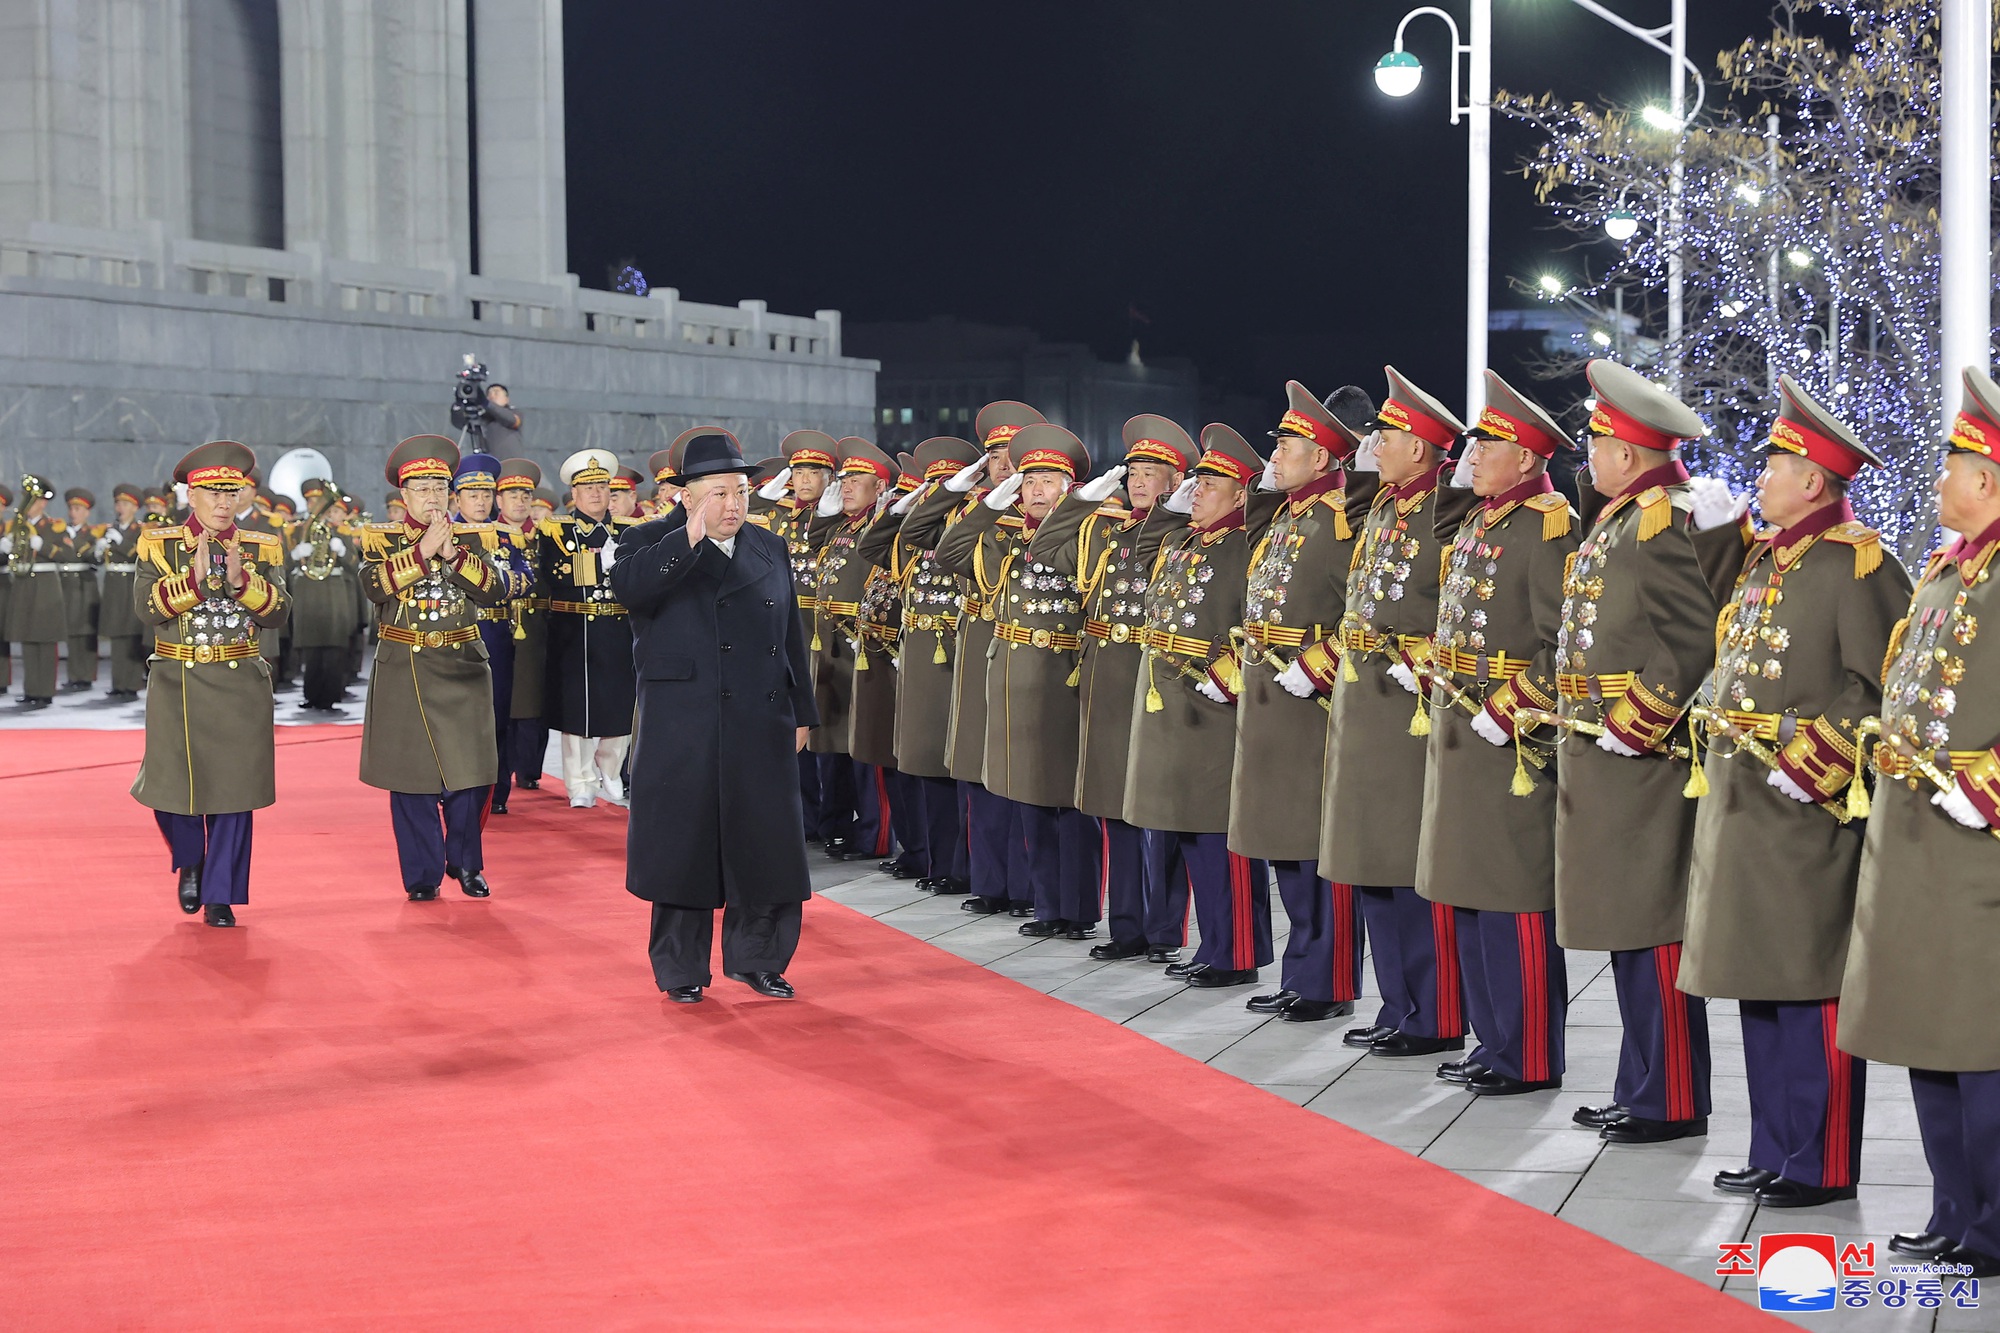 Chùm ảnh ông Kim Jong-un cùng phu nhân, con gái dự cuộc duyệt binh lớn - Ảnh 1.